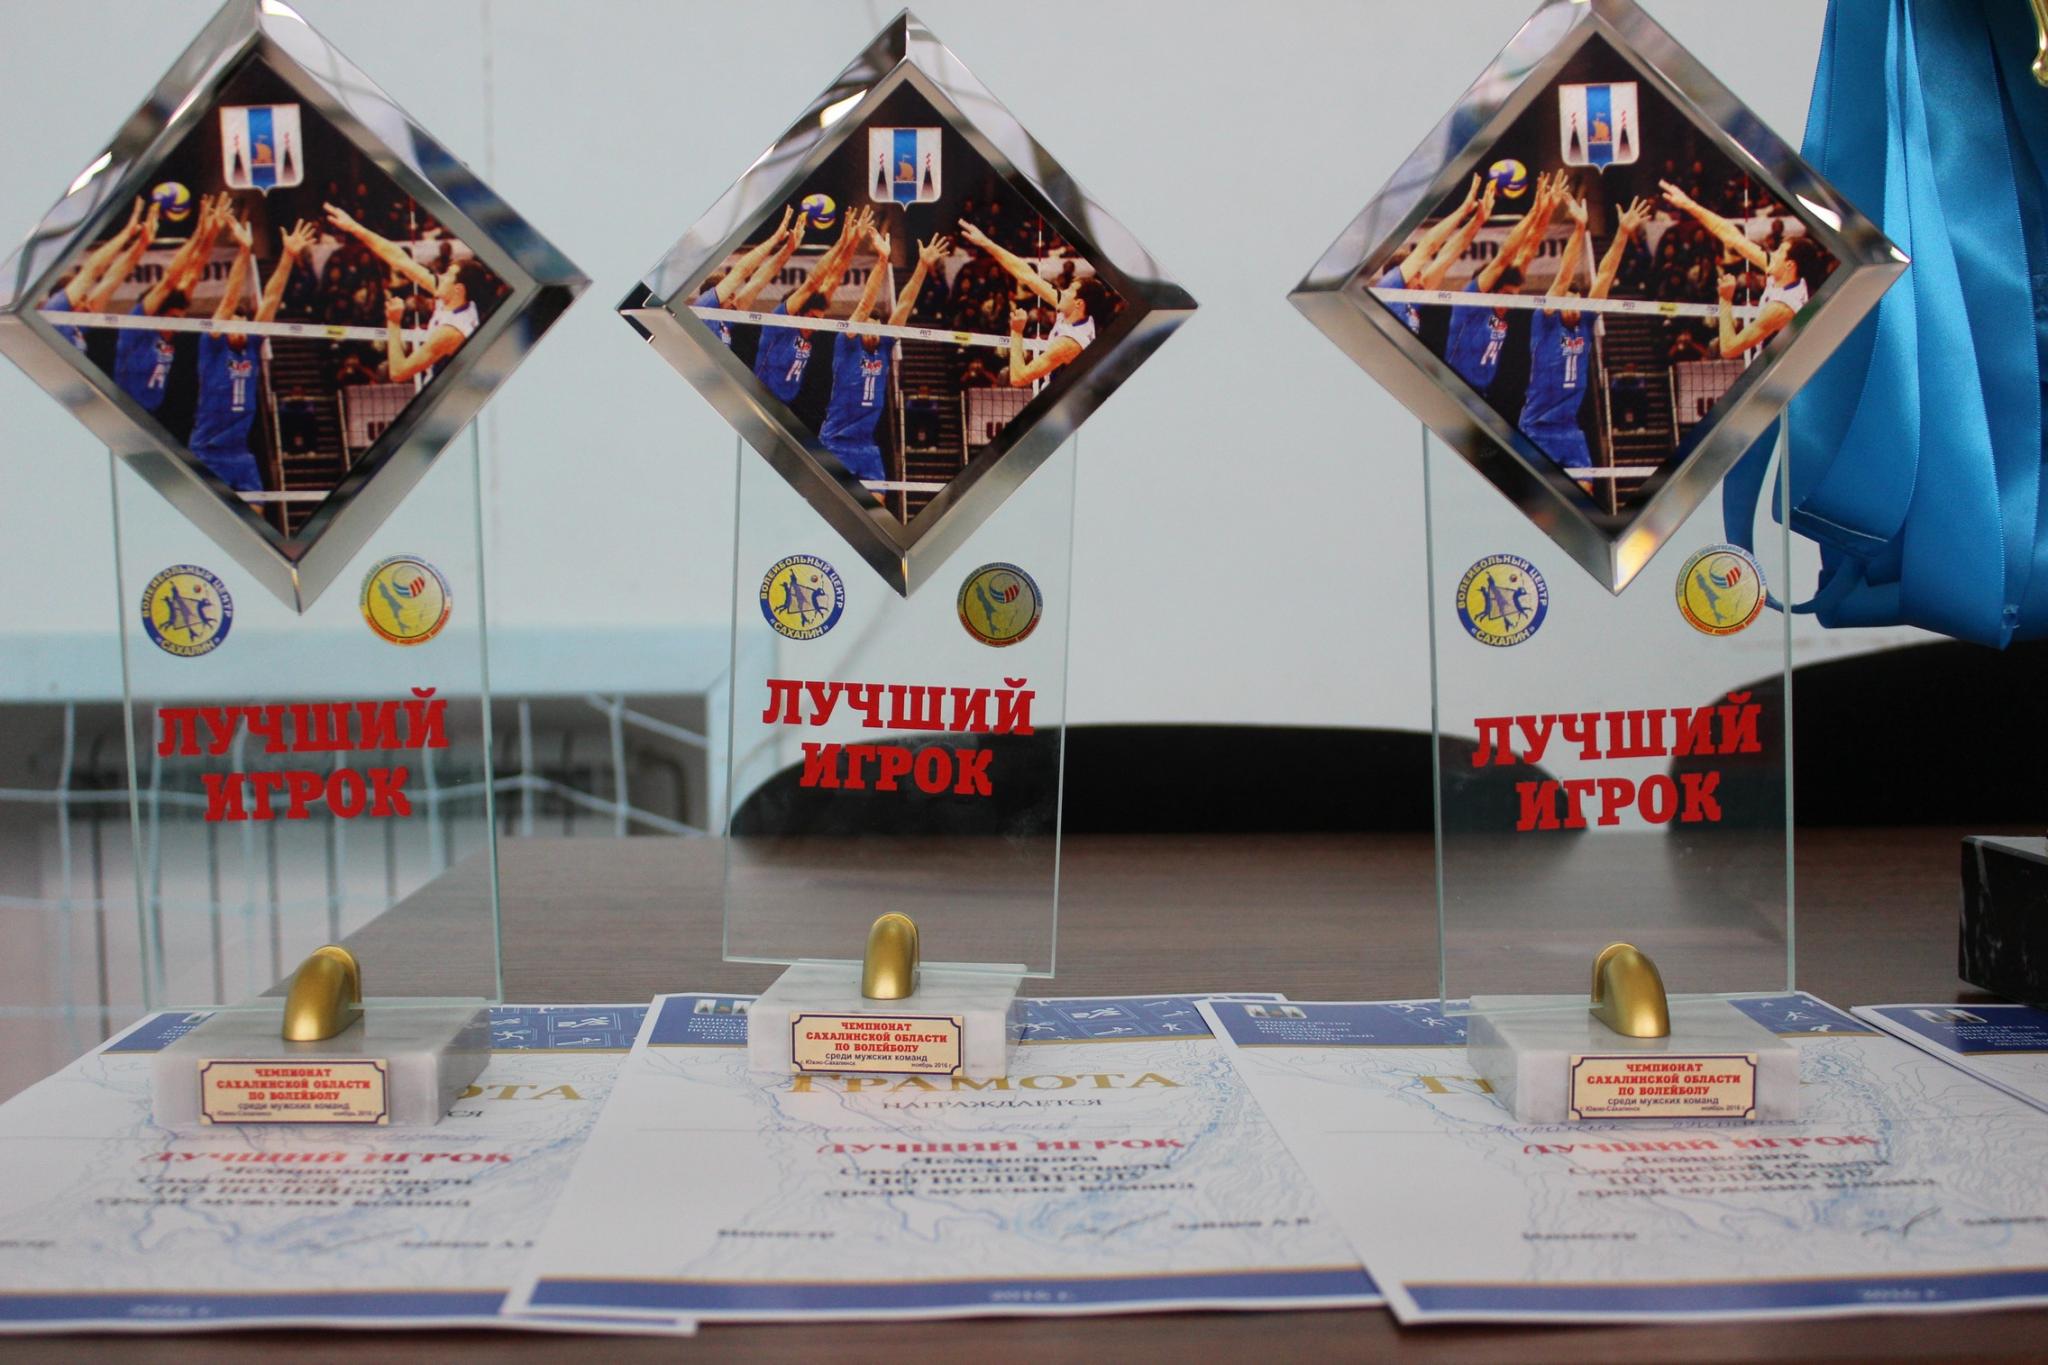 Чемпионат области 2016 года по волейболу среди мужских команд